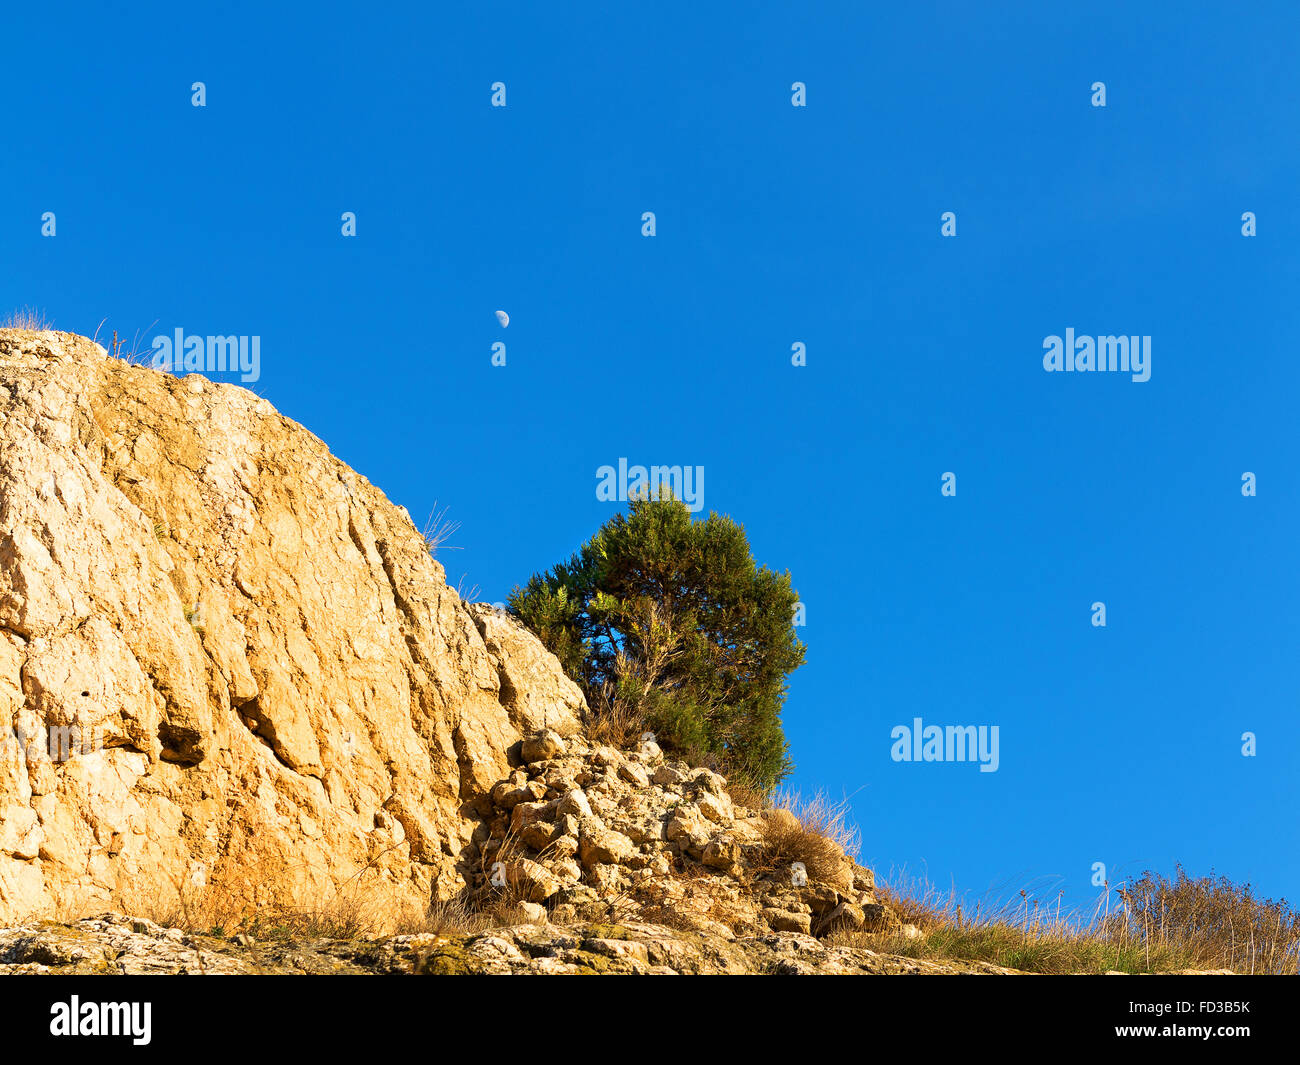 Mezzaluna nel cielo blu chiaro, albero in cima a una montagna in un contrasto di luce solare intensa, tonalità contrastanti. Crimea Foto Stock